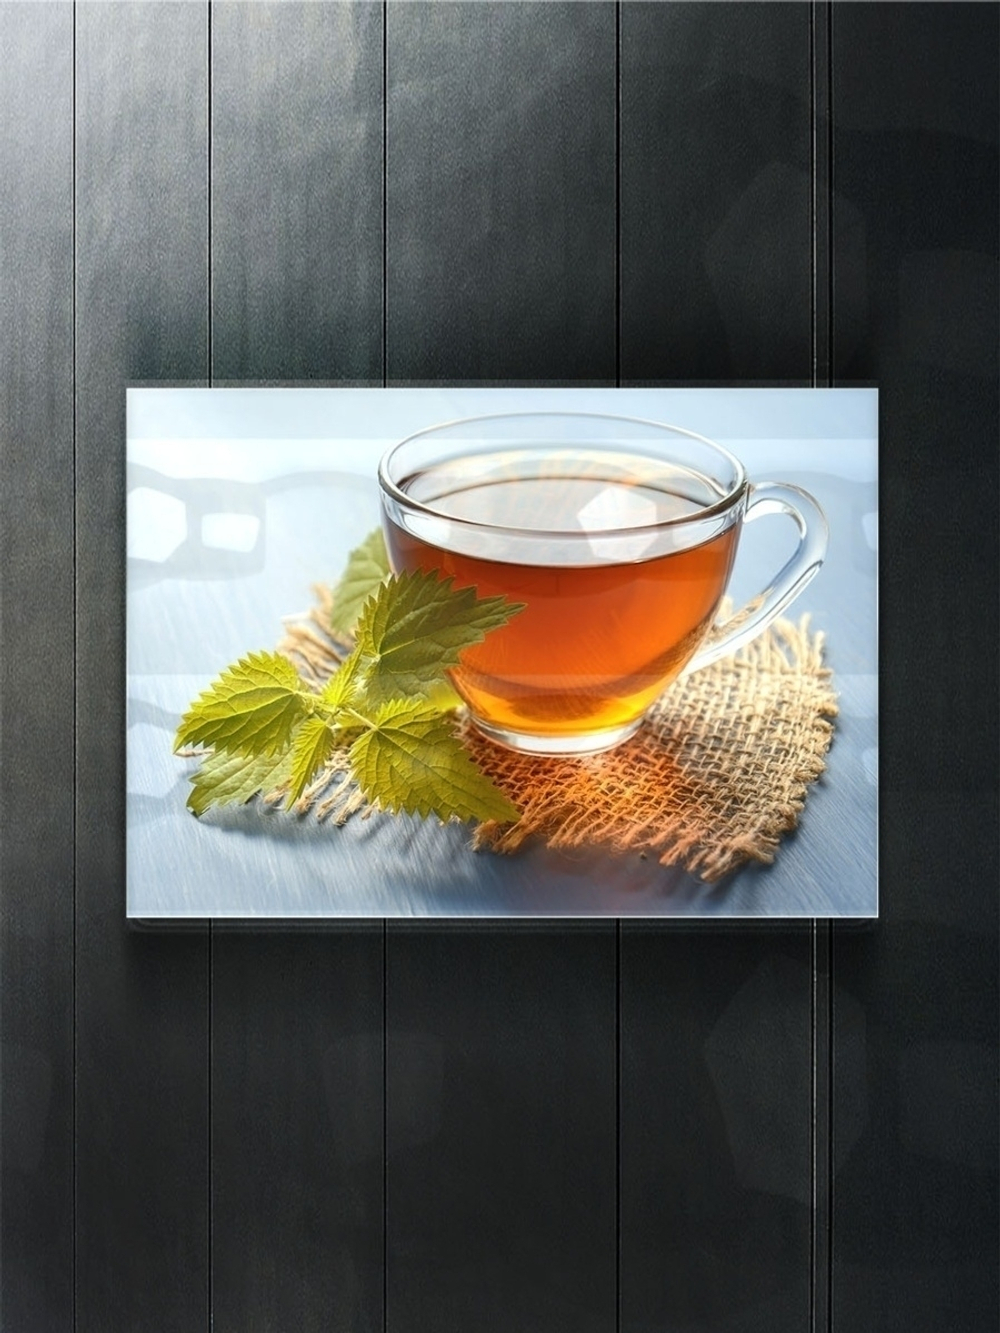 Модульная стеклянная интерьерная картина / Фотокартина на кухню / Чашка чая / Чайная трапеза, 28x40 Декор для дома, подарок